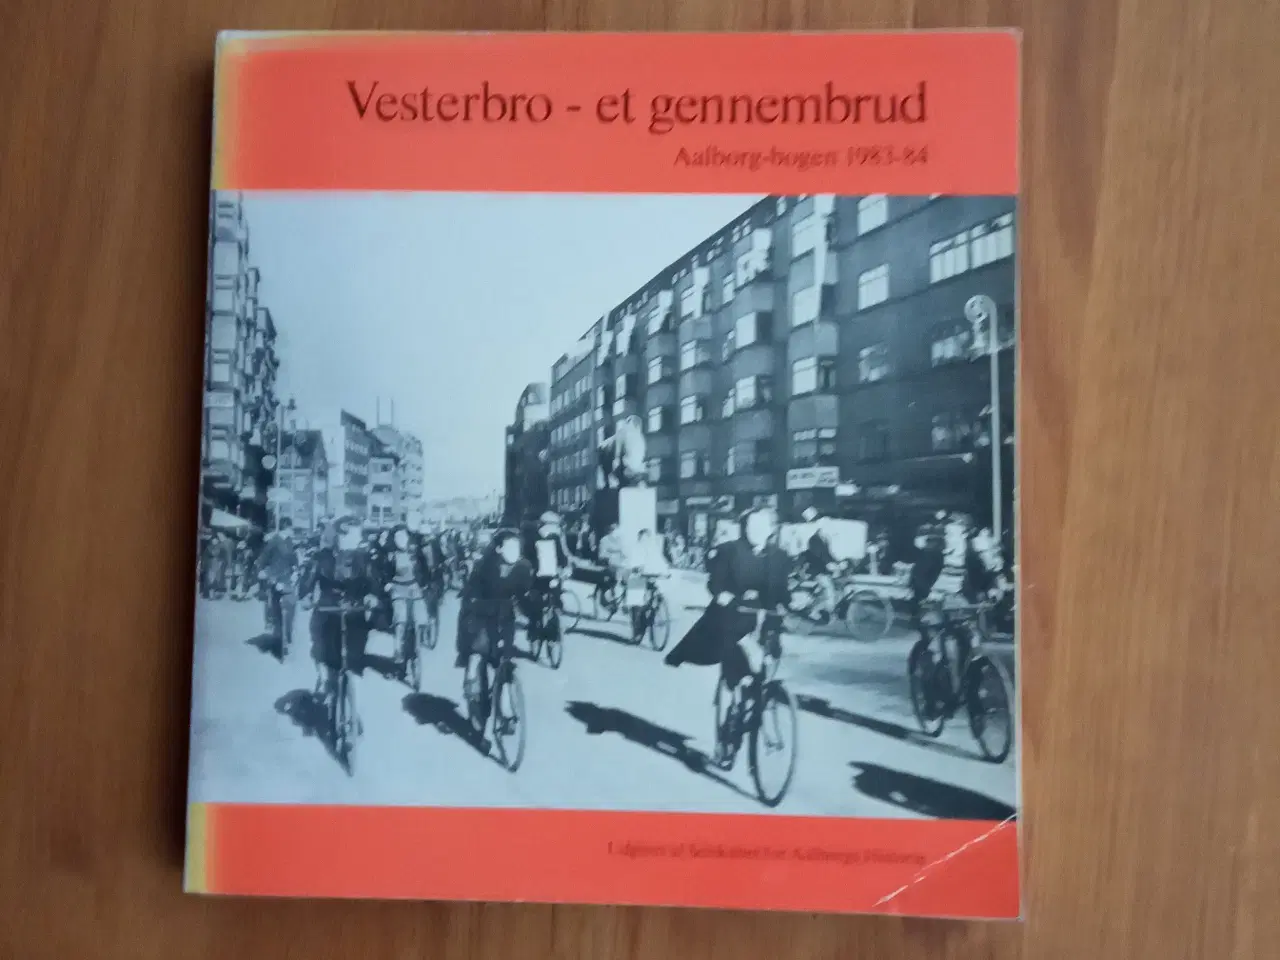 Billede 1 - Vesterbro - et gennembrud  - Aalborg-bogen 1983-84